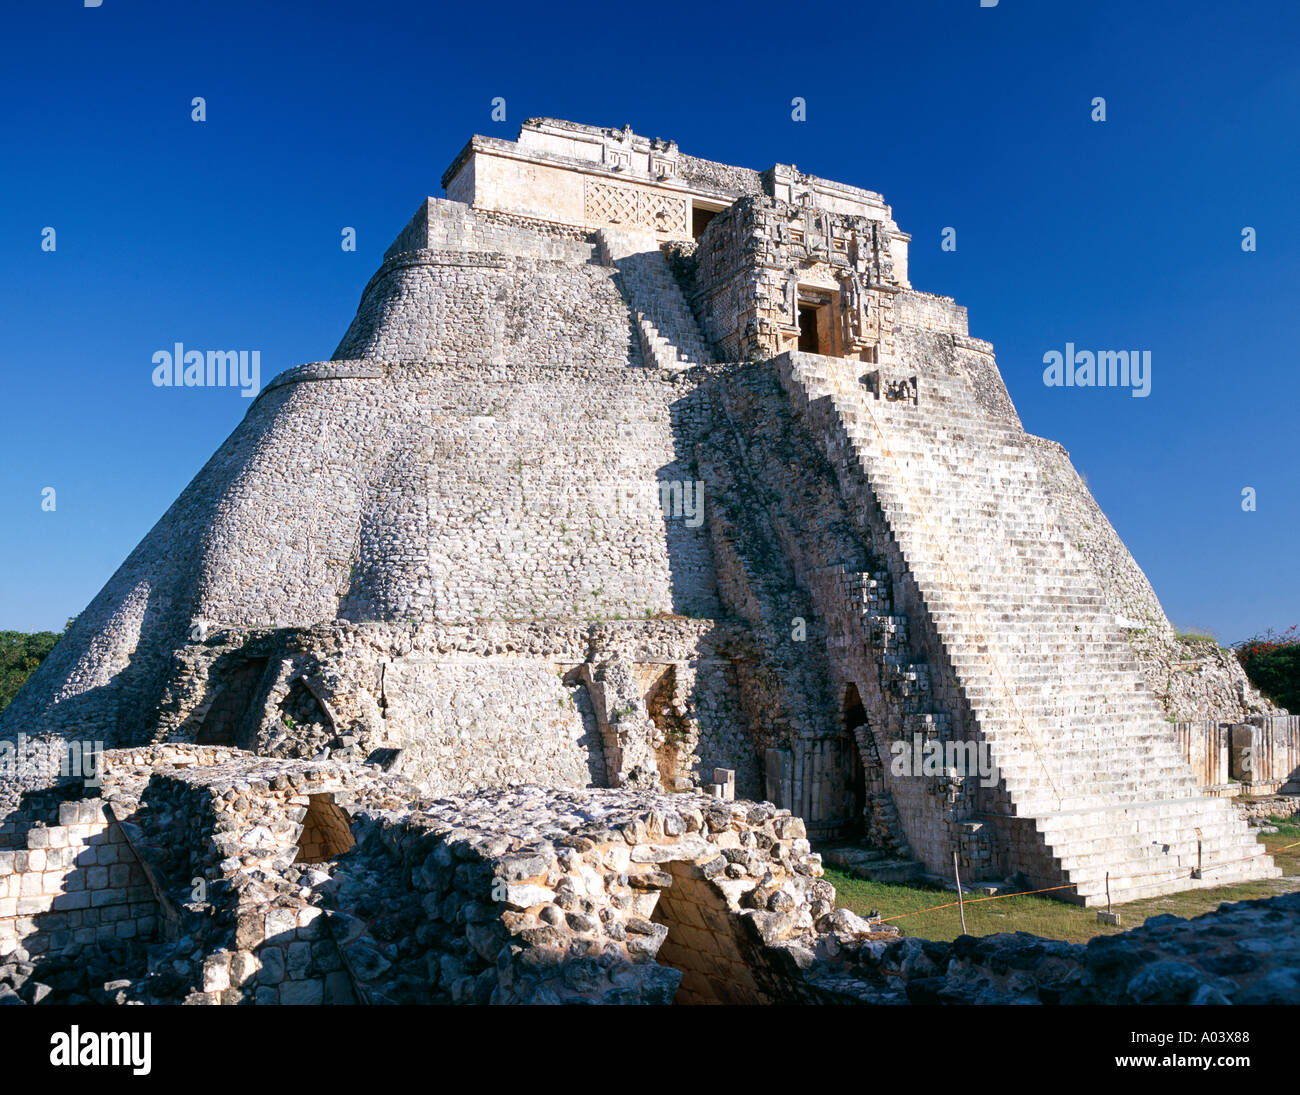 La pyramide du magicien, une partie de l'Uxmal maya au Mexique. Banque D'Images